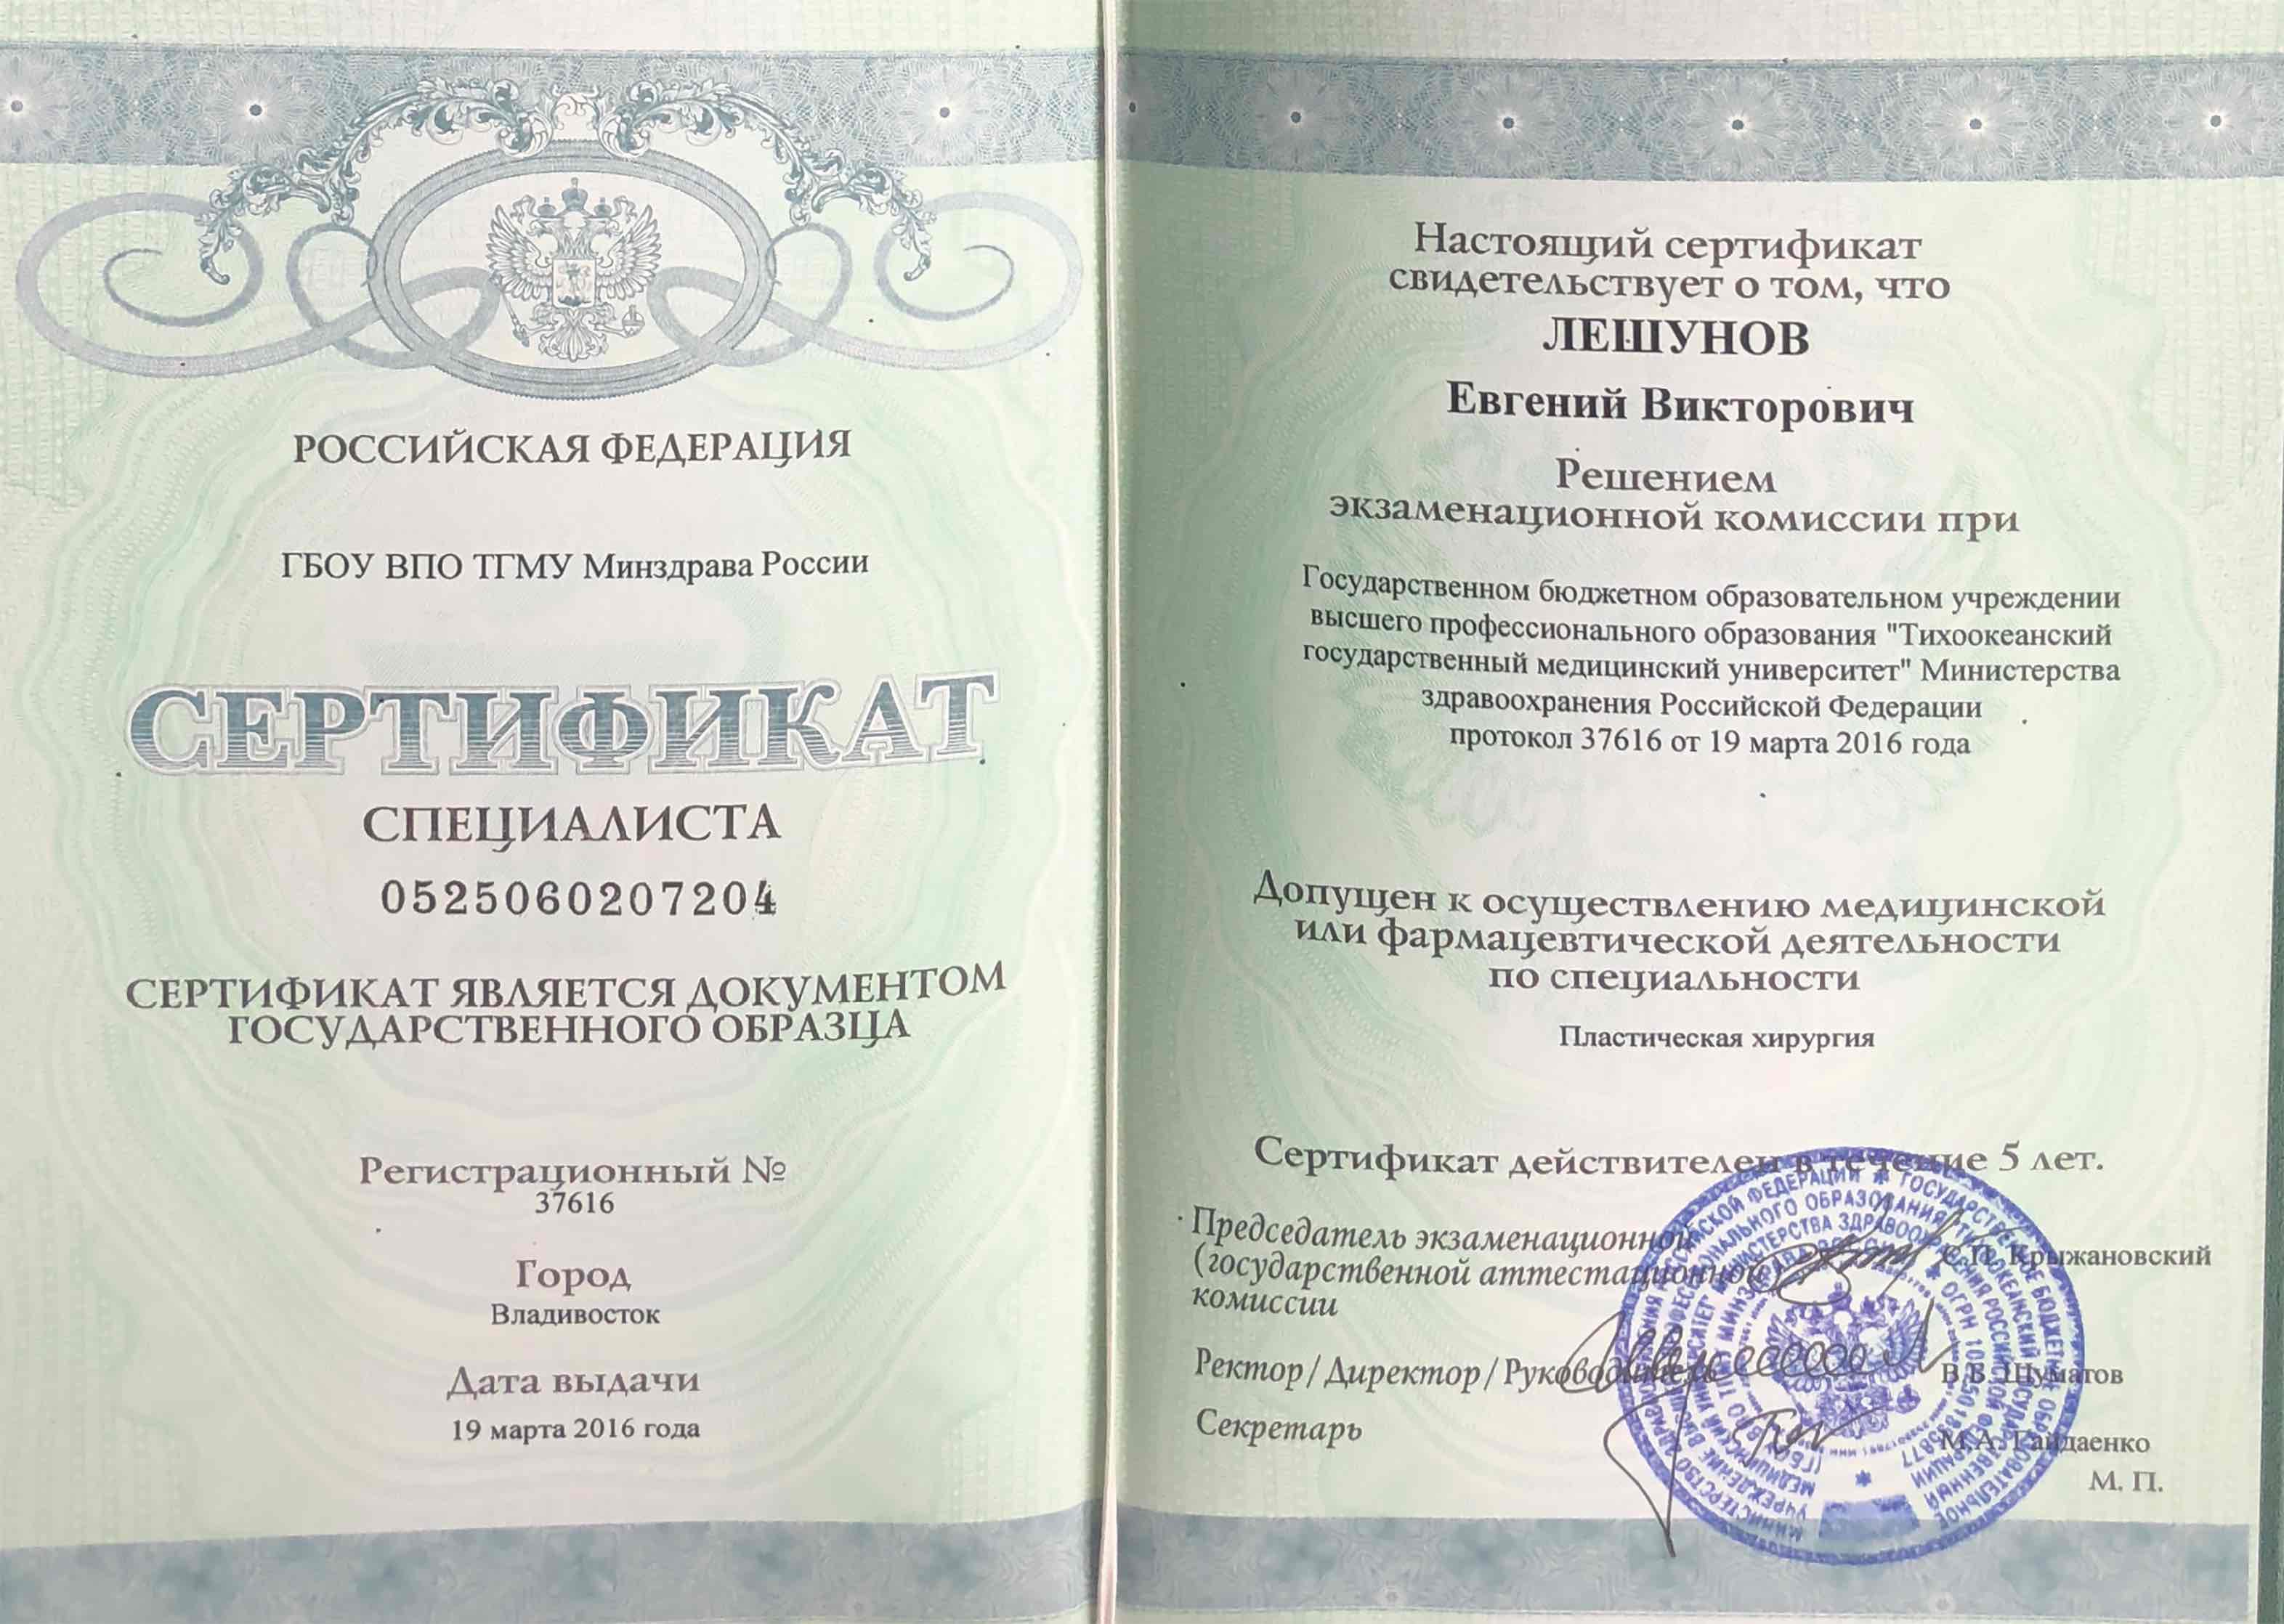 Сертификат специалиста "Пластическая хирургия"